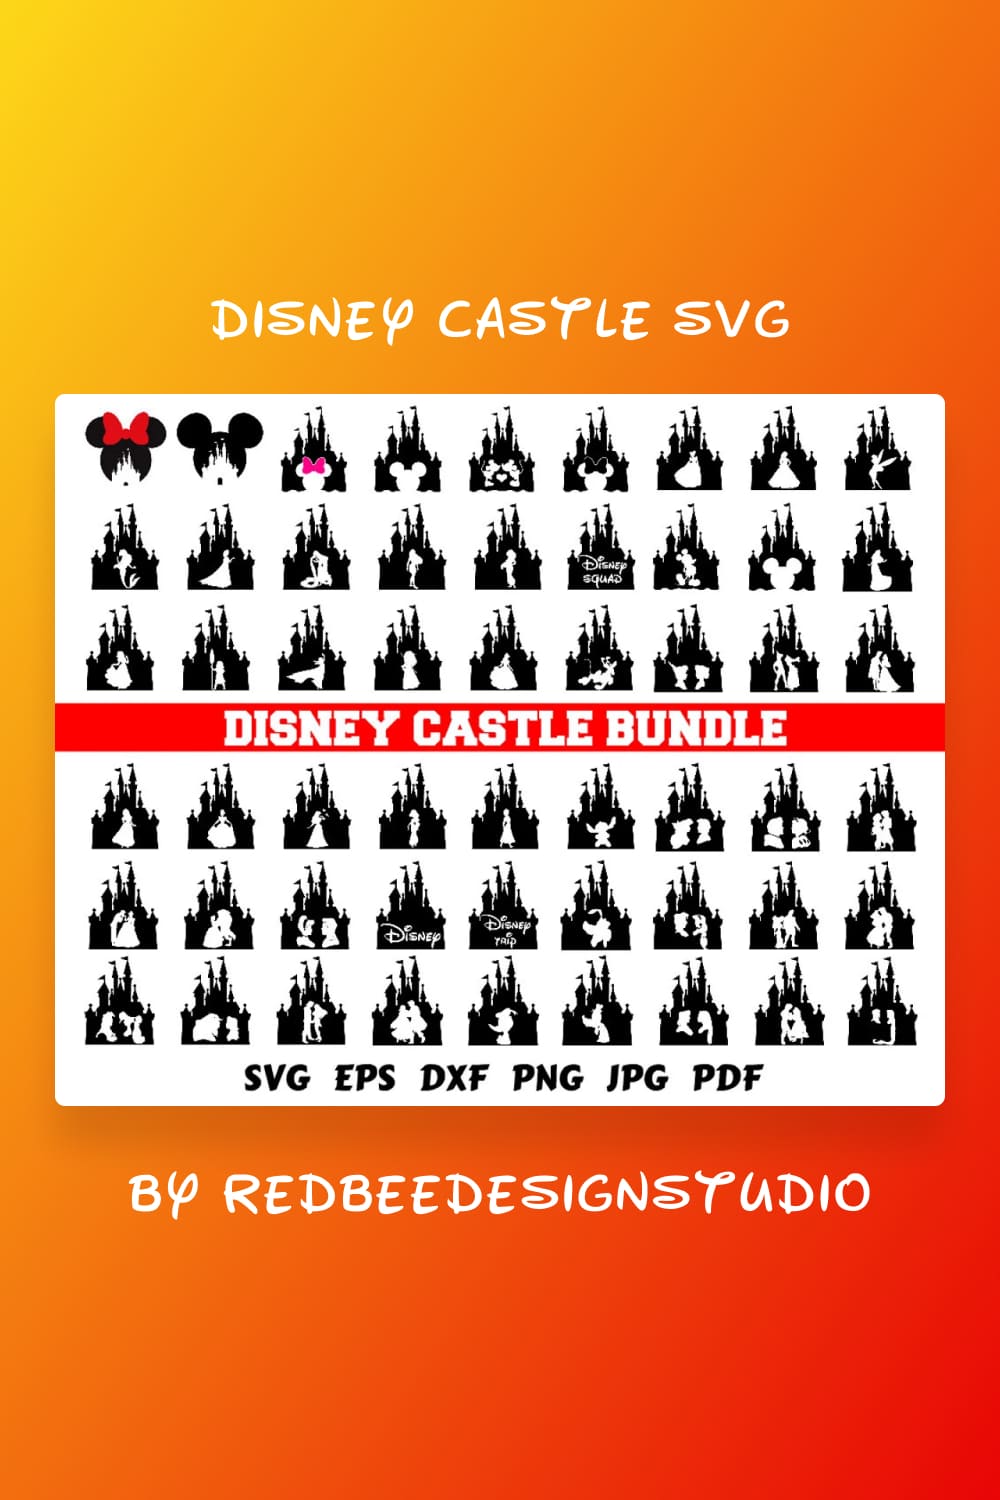 Disney Castle SVG Bundle Pinterest.